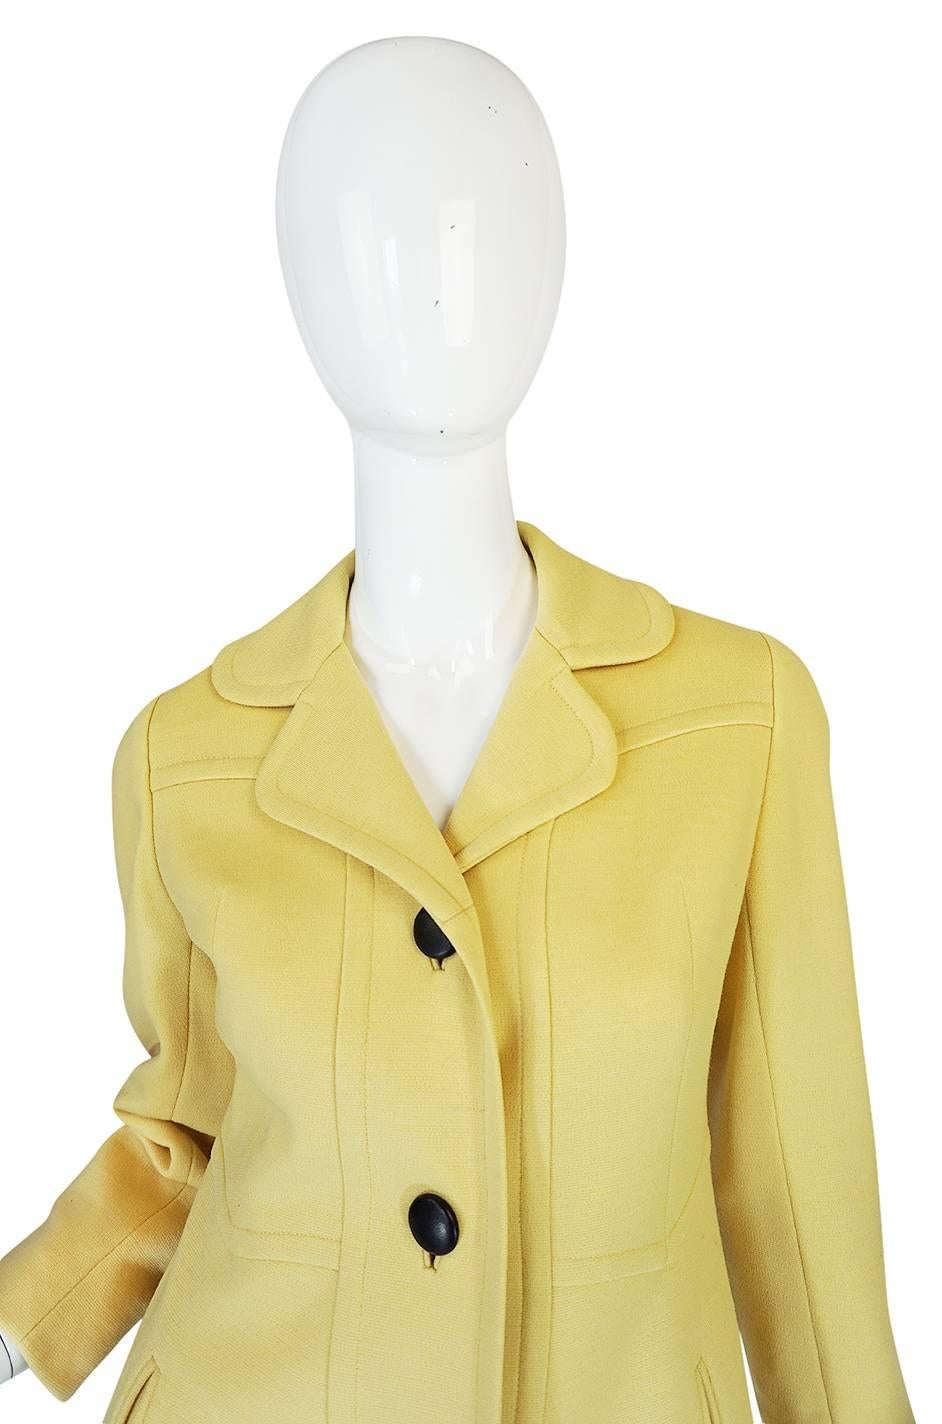 Chic 1970s Pierre Cardin RTW Sleek Little Yellow Coat 1